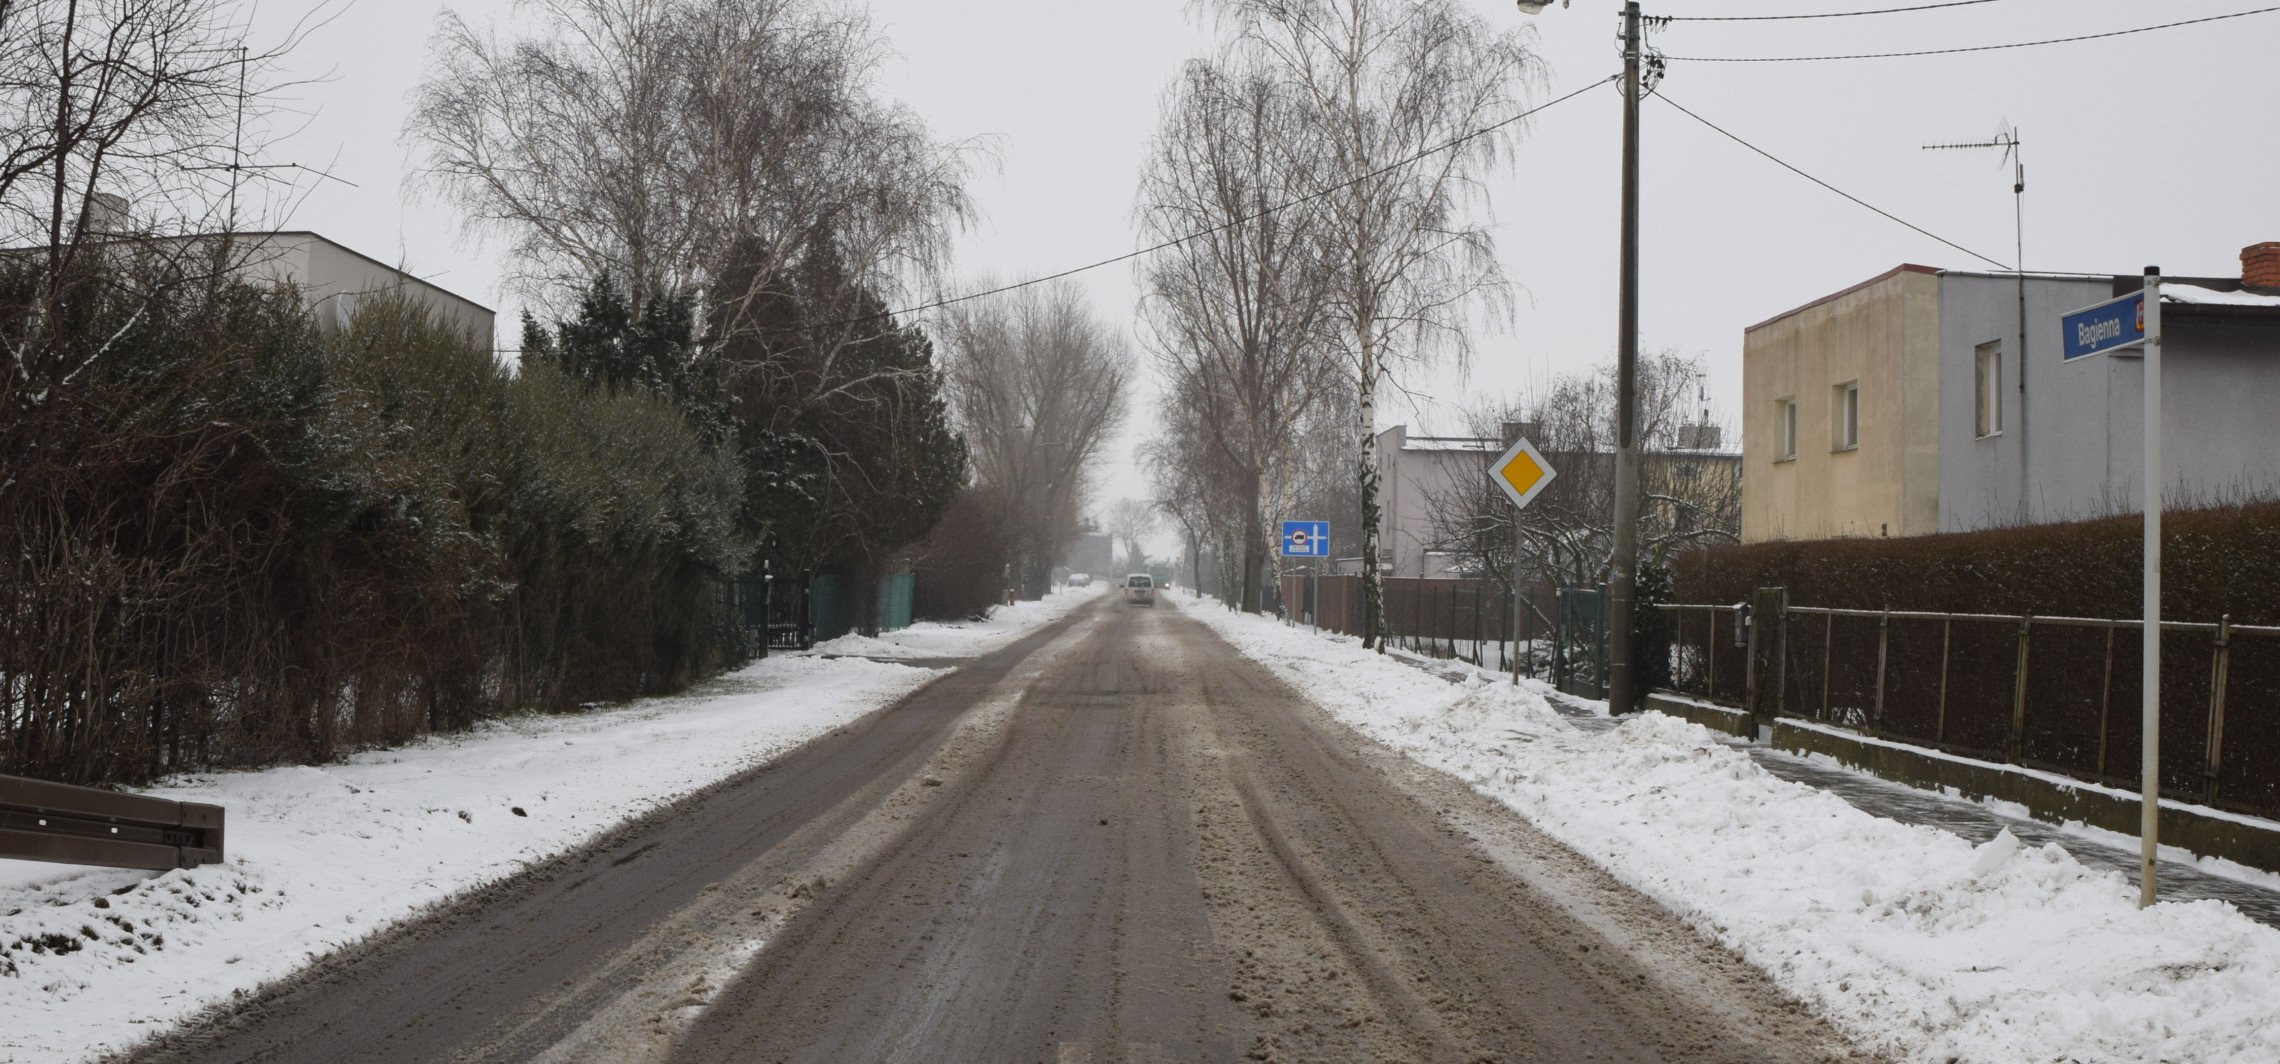 Inowrocław - Na kolejnych ulicach zrobi się jaśniej i bezpieczniej